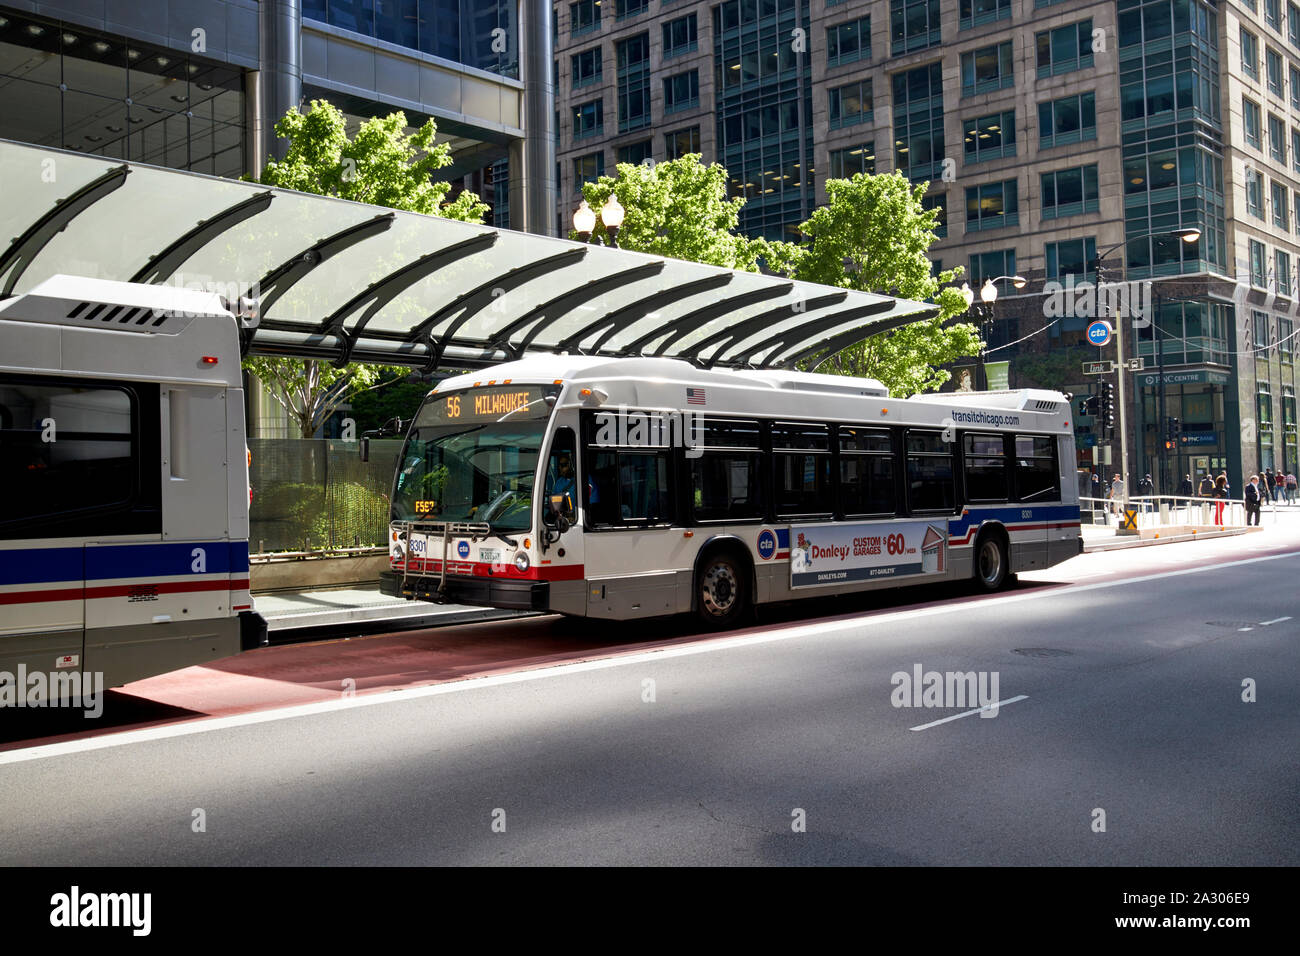 Cta transit bus 7900-serie nova autobus alla fermata degli autobus in Chicago Illinois stati uniti d'America Foto Stock